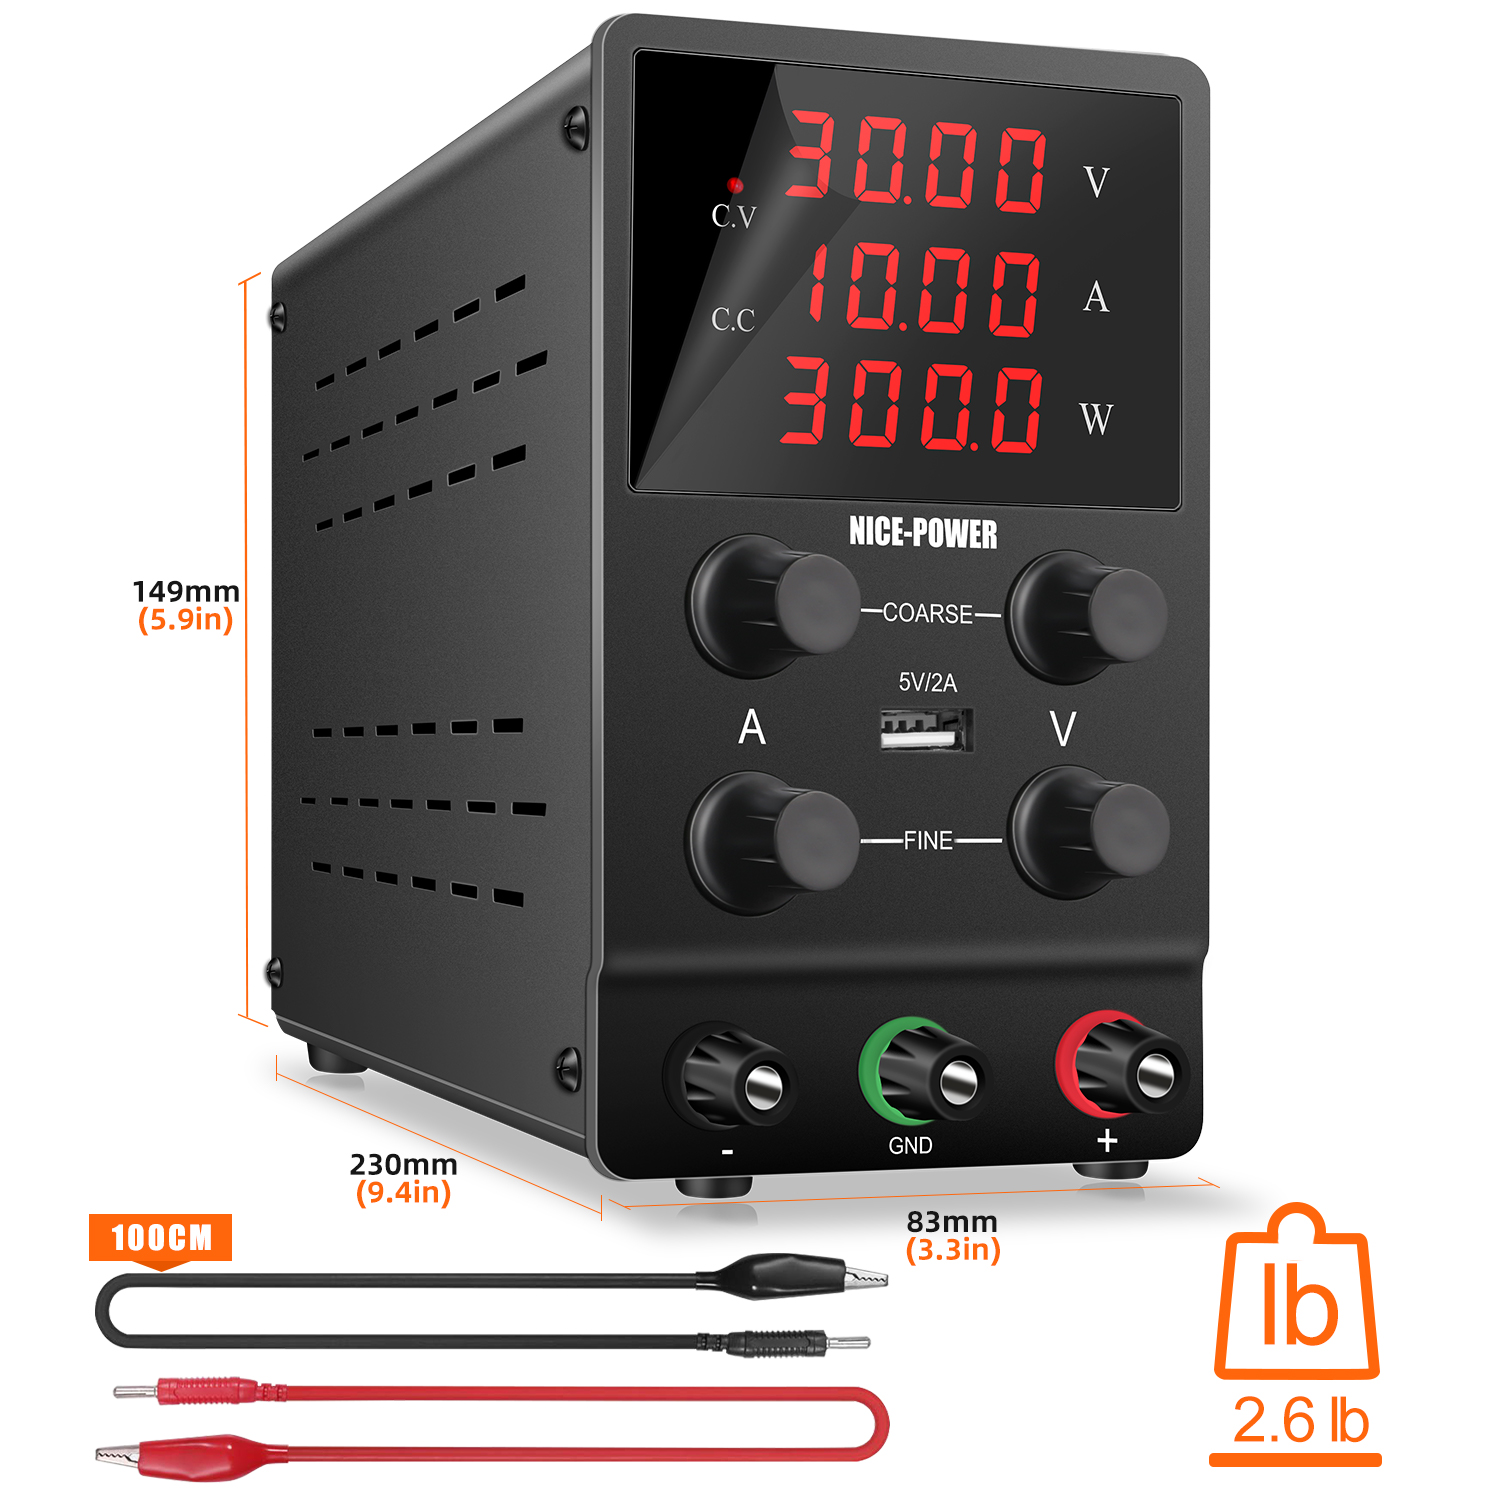 เกี่ยวกับสินค้า 【Thailand Spot】NICE-POWER สวิทช์ชิ่ง24v dc power s ปรับค่าได้ Voltage Regrชุบแหล่งจ่ายไฟ,ห้องปฏิบัติการAgingทดสอบซ่อมอิเล็กทรอนิกส์,ปรับ 0-30 โวลต์ 0-10A 300W